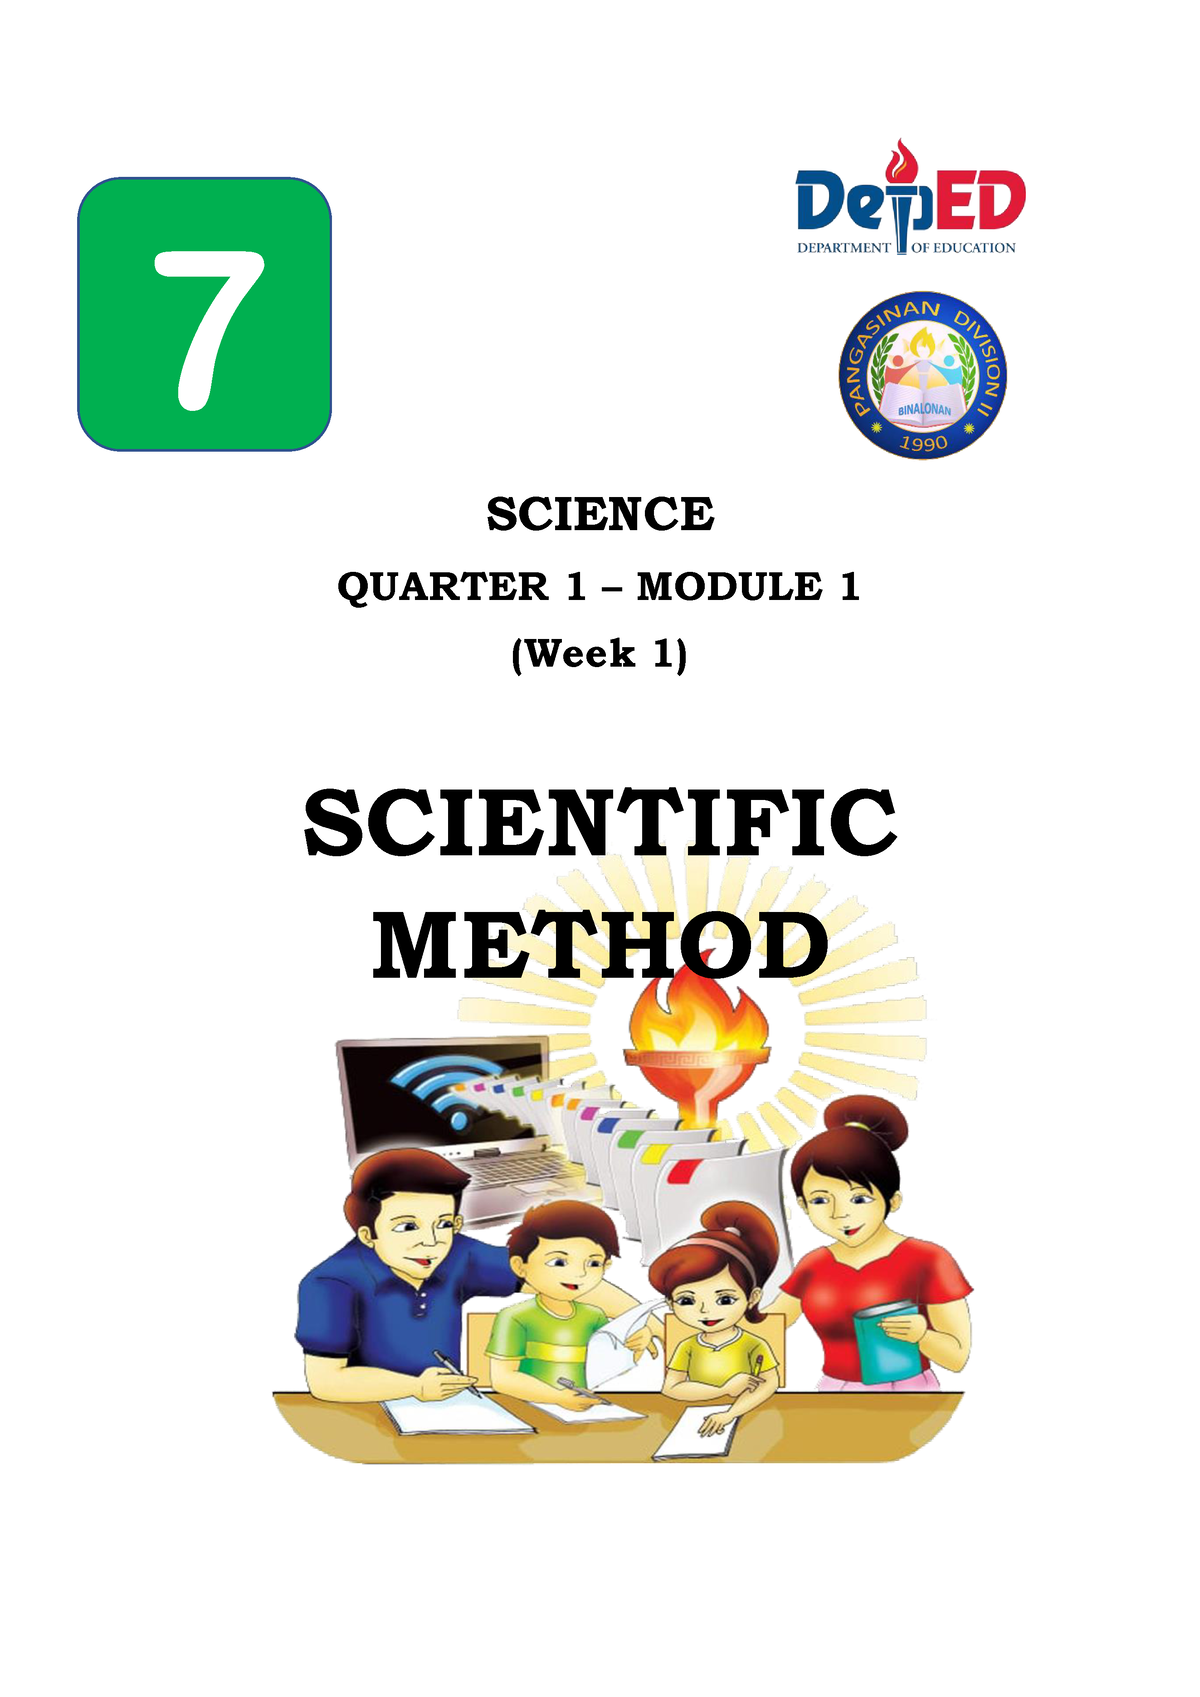 Science 7 Quarter 1 Module 1 Science Quarter 1 Module 1 Week 1 Scientific Method 7 This